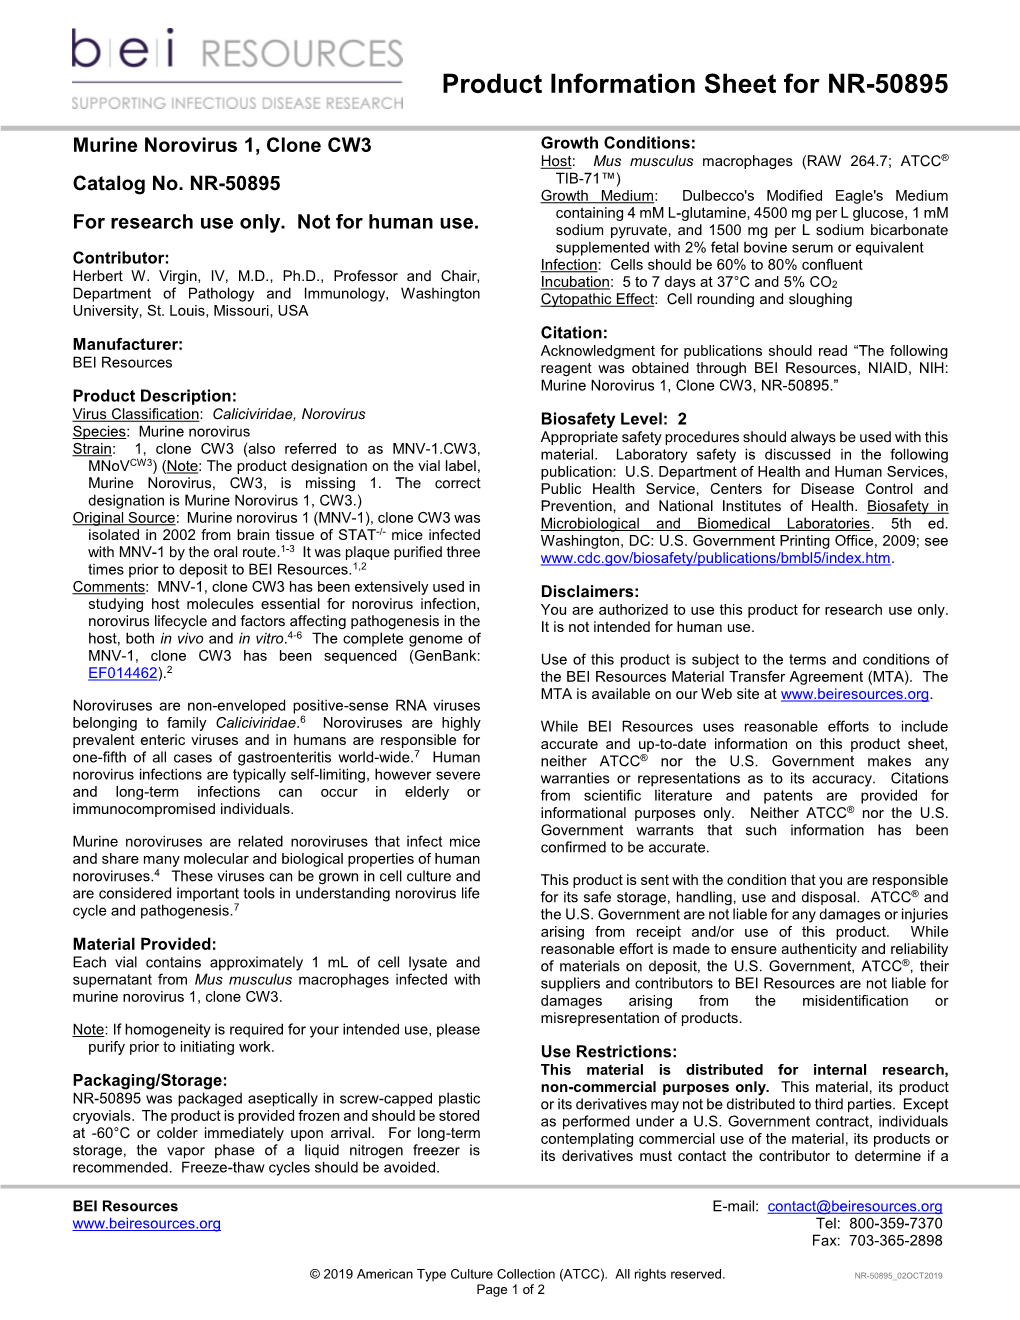 Product Information Sheet, NR-50895 Murine Norovirus 1, Clone